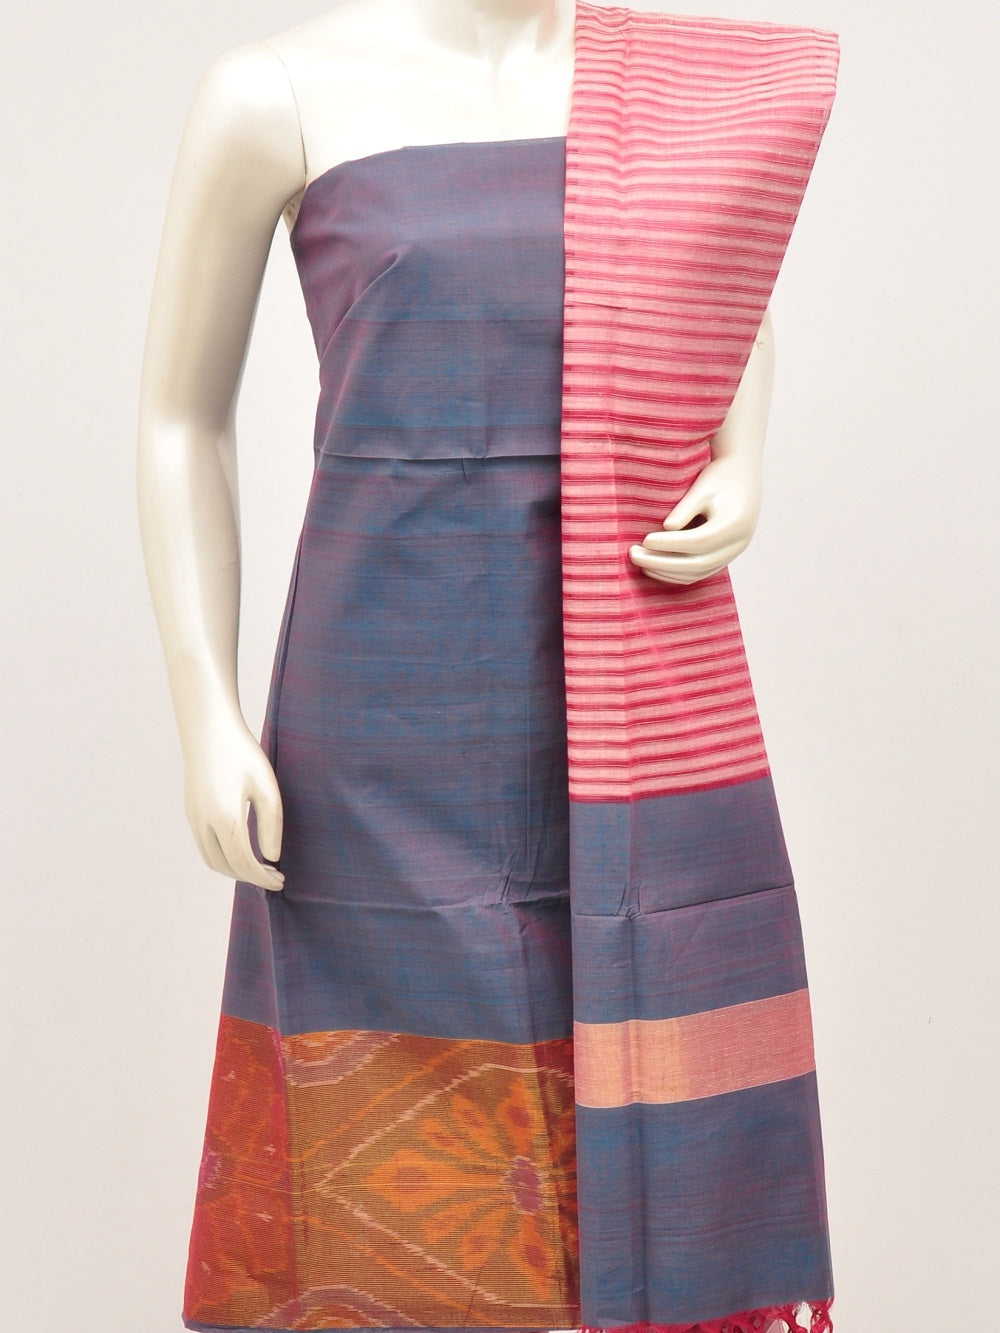 Vintage Sewing Pattern Ladies' Late 1940s Dress Simplicity | Etsy |  Simplicity dress, Vintage dress patterns, Vintage sewing patterns